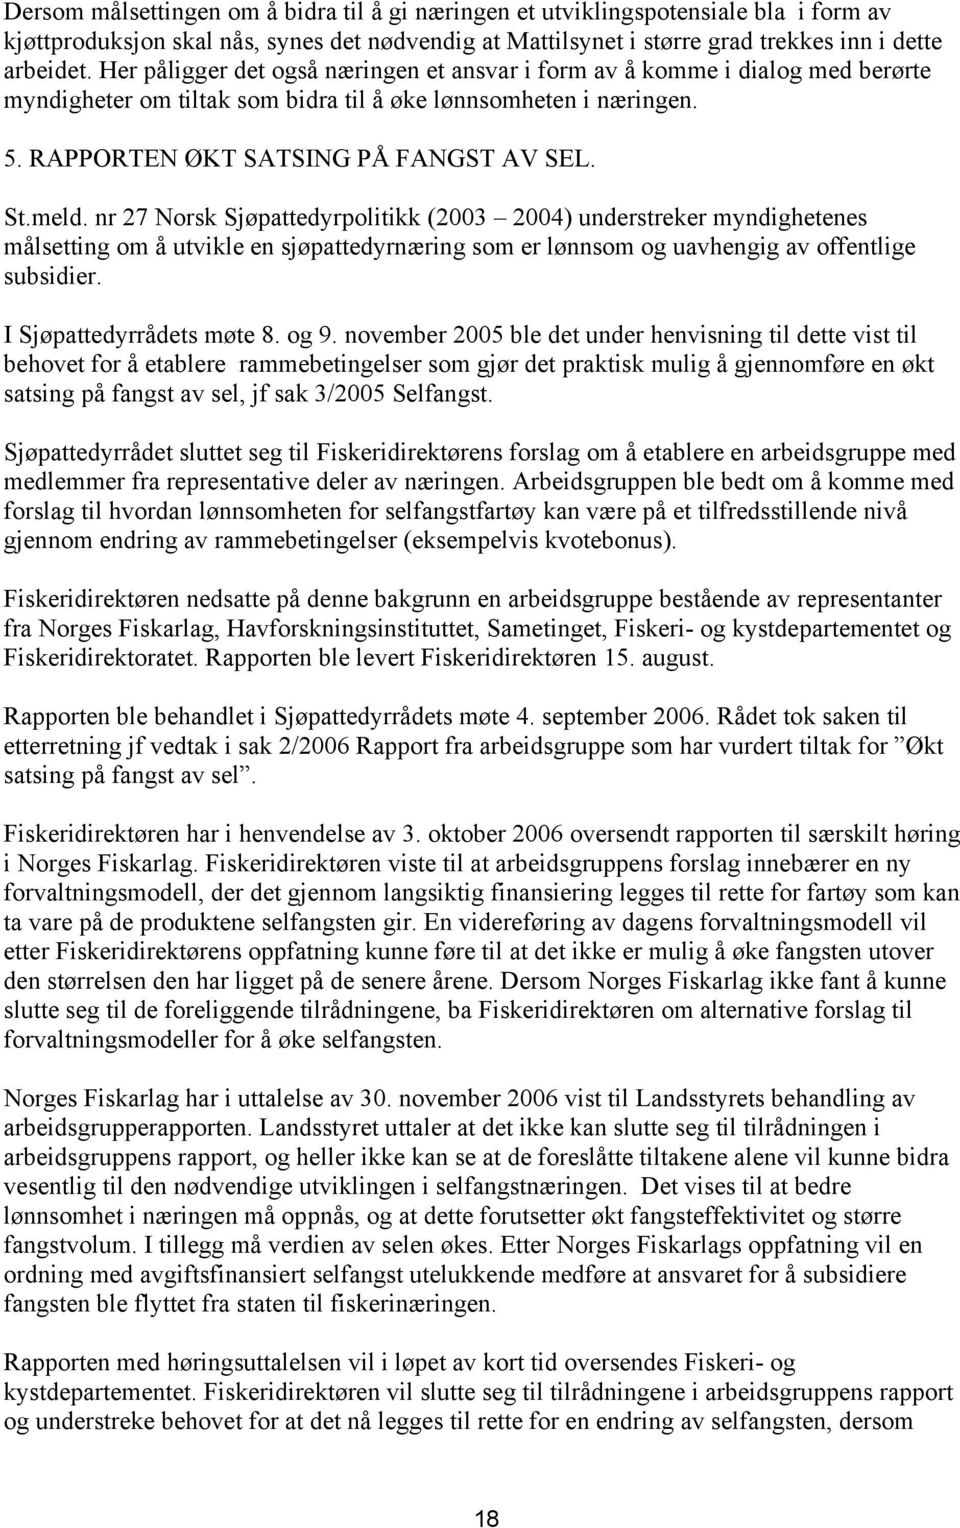 nr 27 Norsk Sjøpattedyrpolitikk (2003 2004) understreker myndighetenes målsetting om å utvikle en sjøpattedyrnæring som er lønnsom og uavhengig av offentlige subsidier. I Sjøpattedyrrådets møte 8.